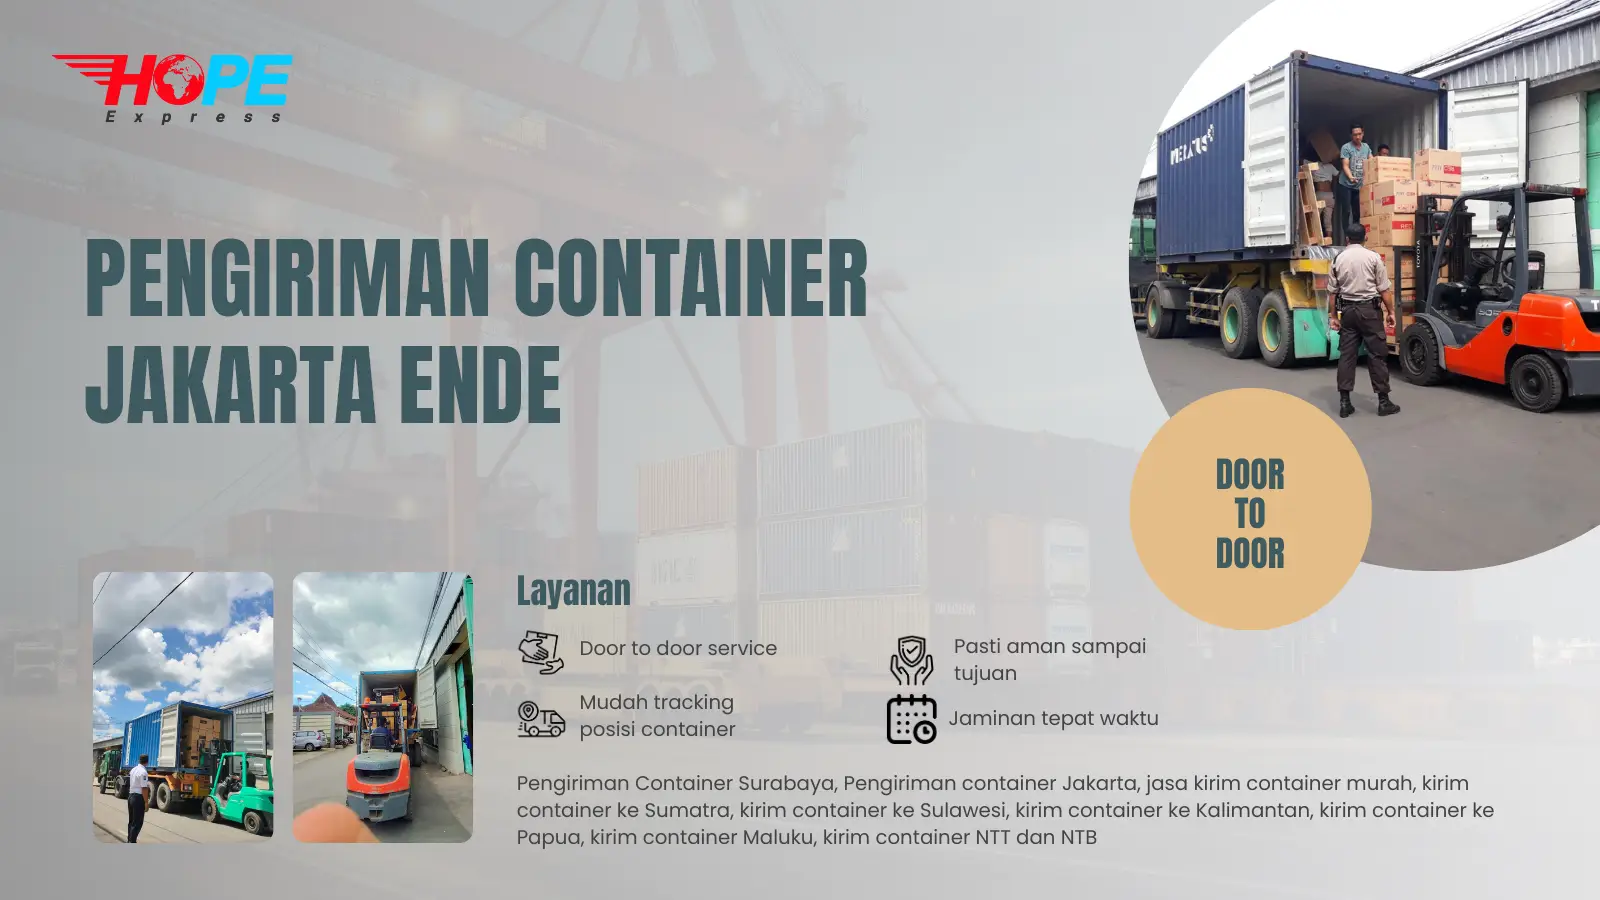 Pengiriman Container Jakarta Ende